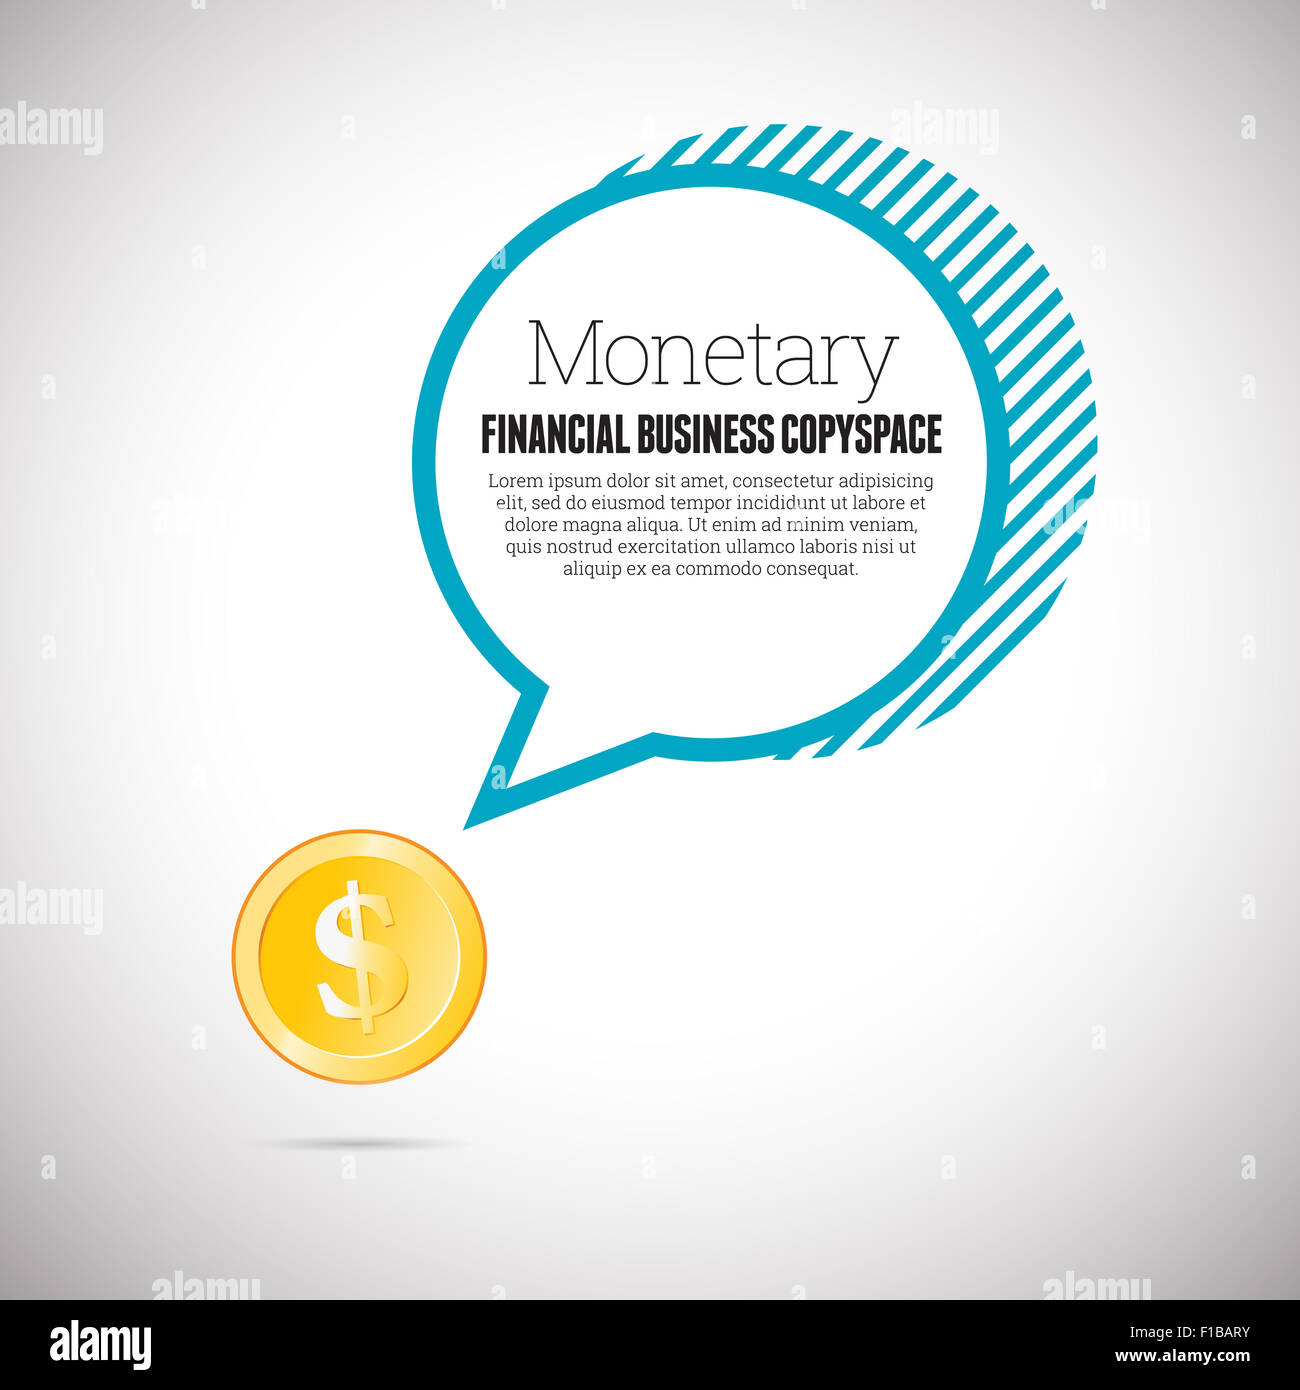 Vektor-Illustration der finanziellen Geschäftskonzept mit goldenen Dollar Münze und Blase Exemplar zu sprechen. Stockfoto